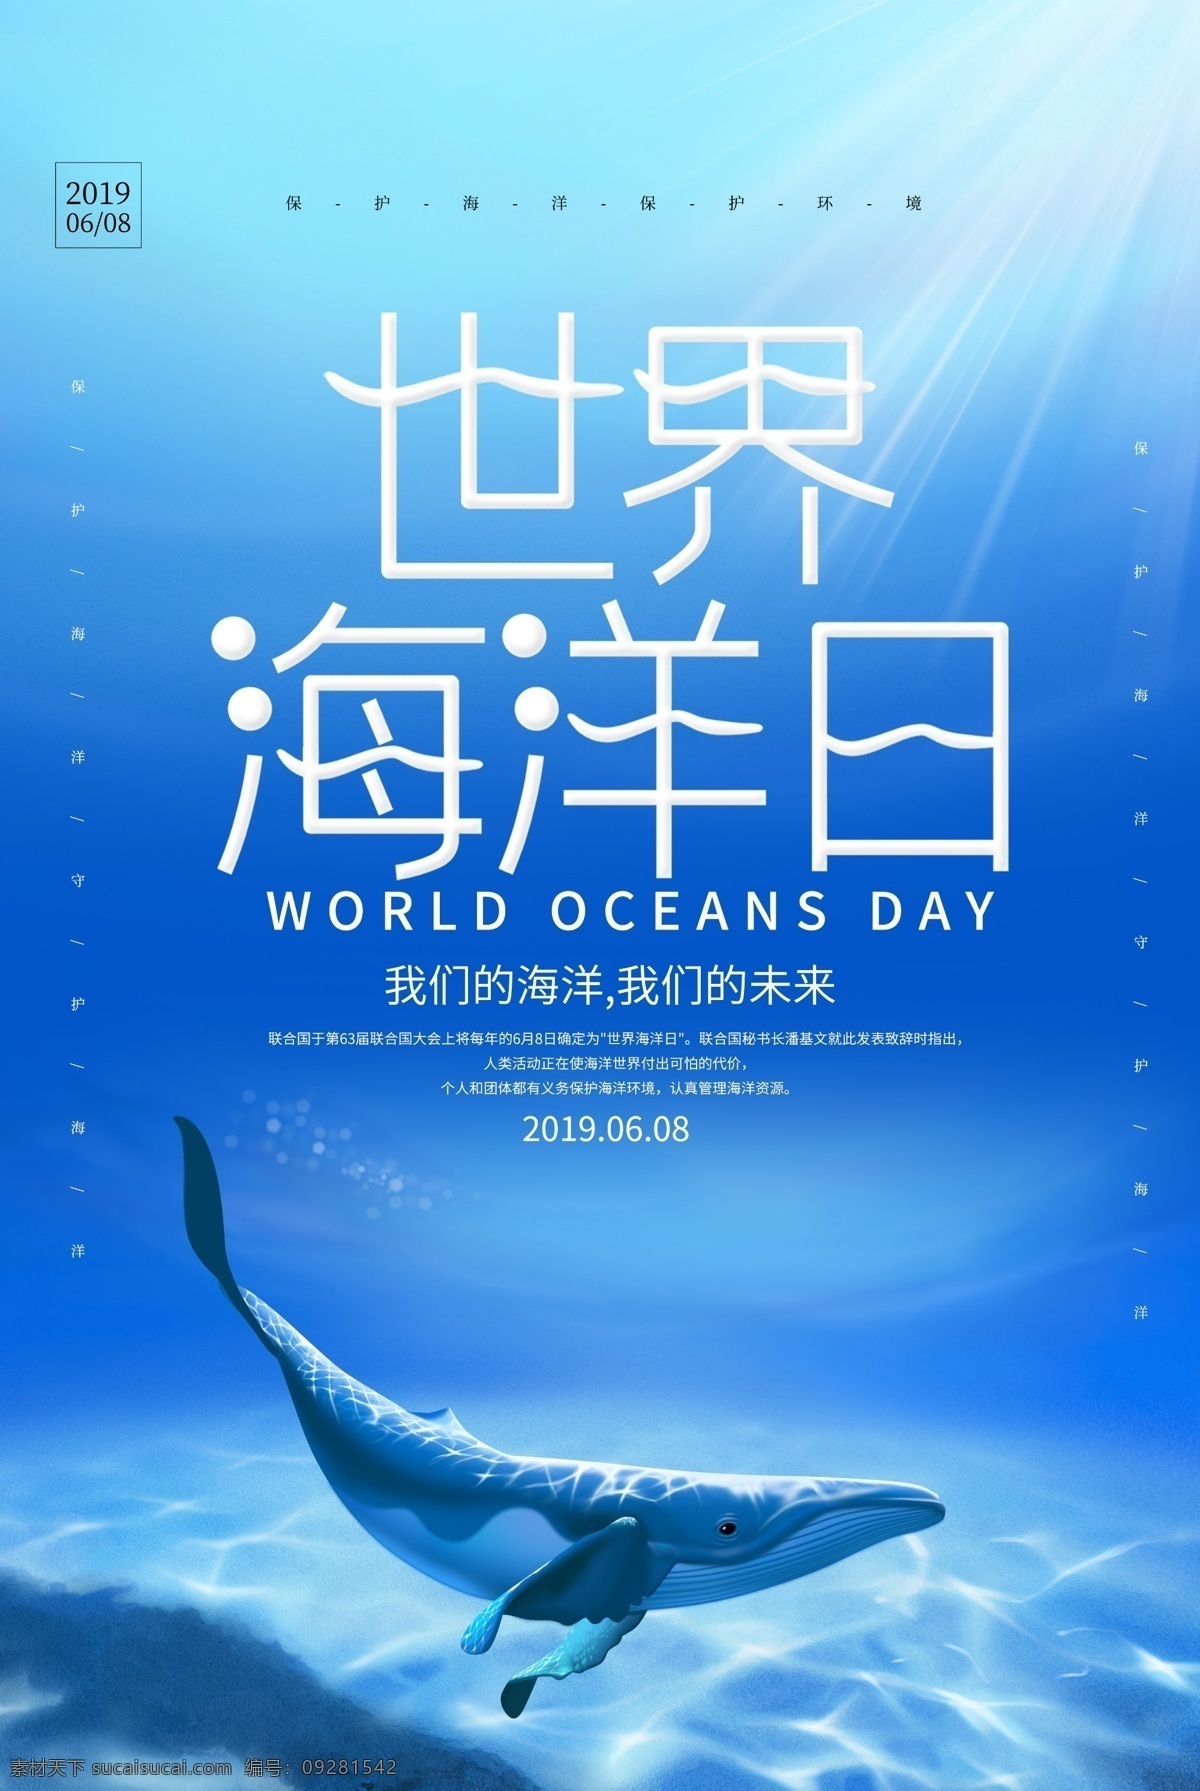 世界 海洋 日 套餐 活动 优惠 促销 海报 世界海洋日